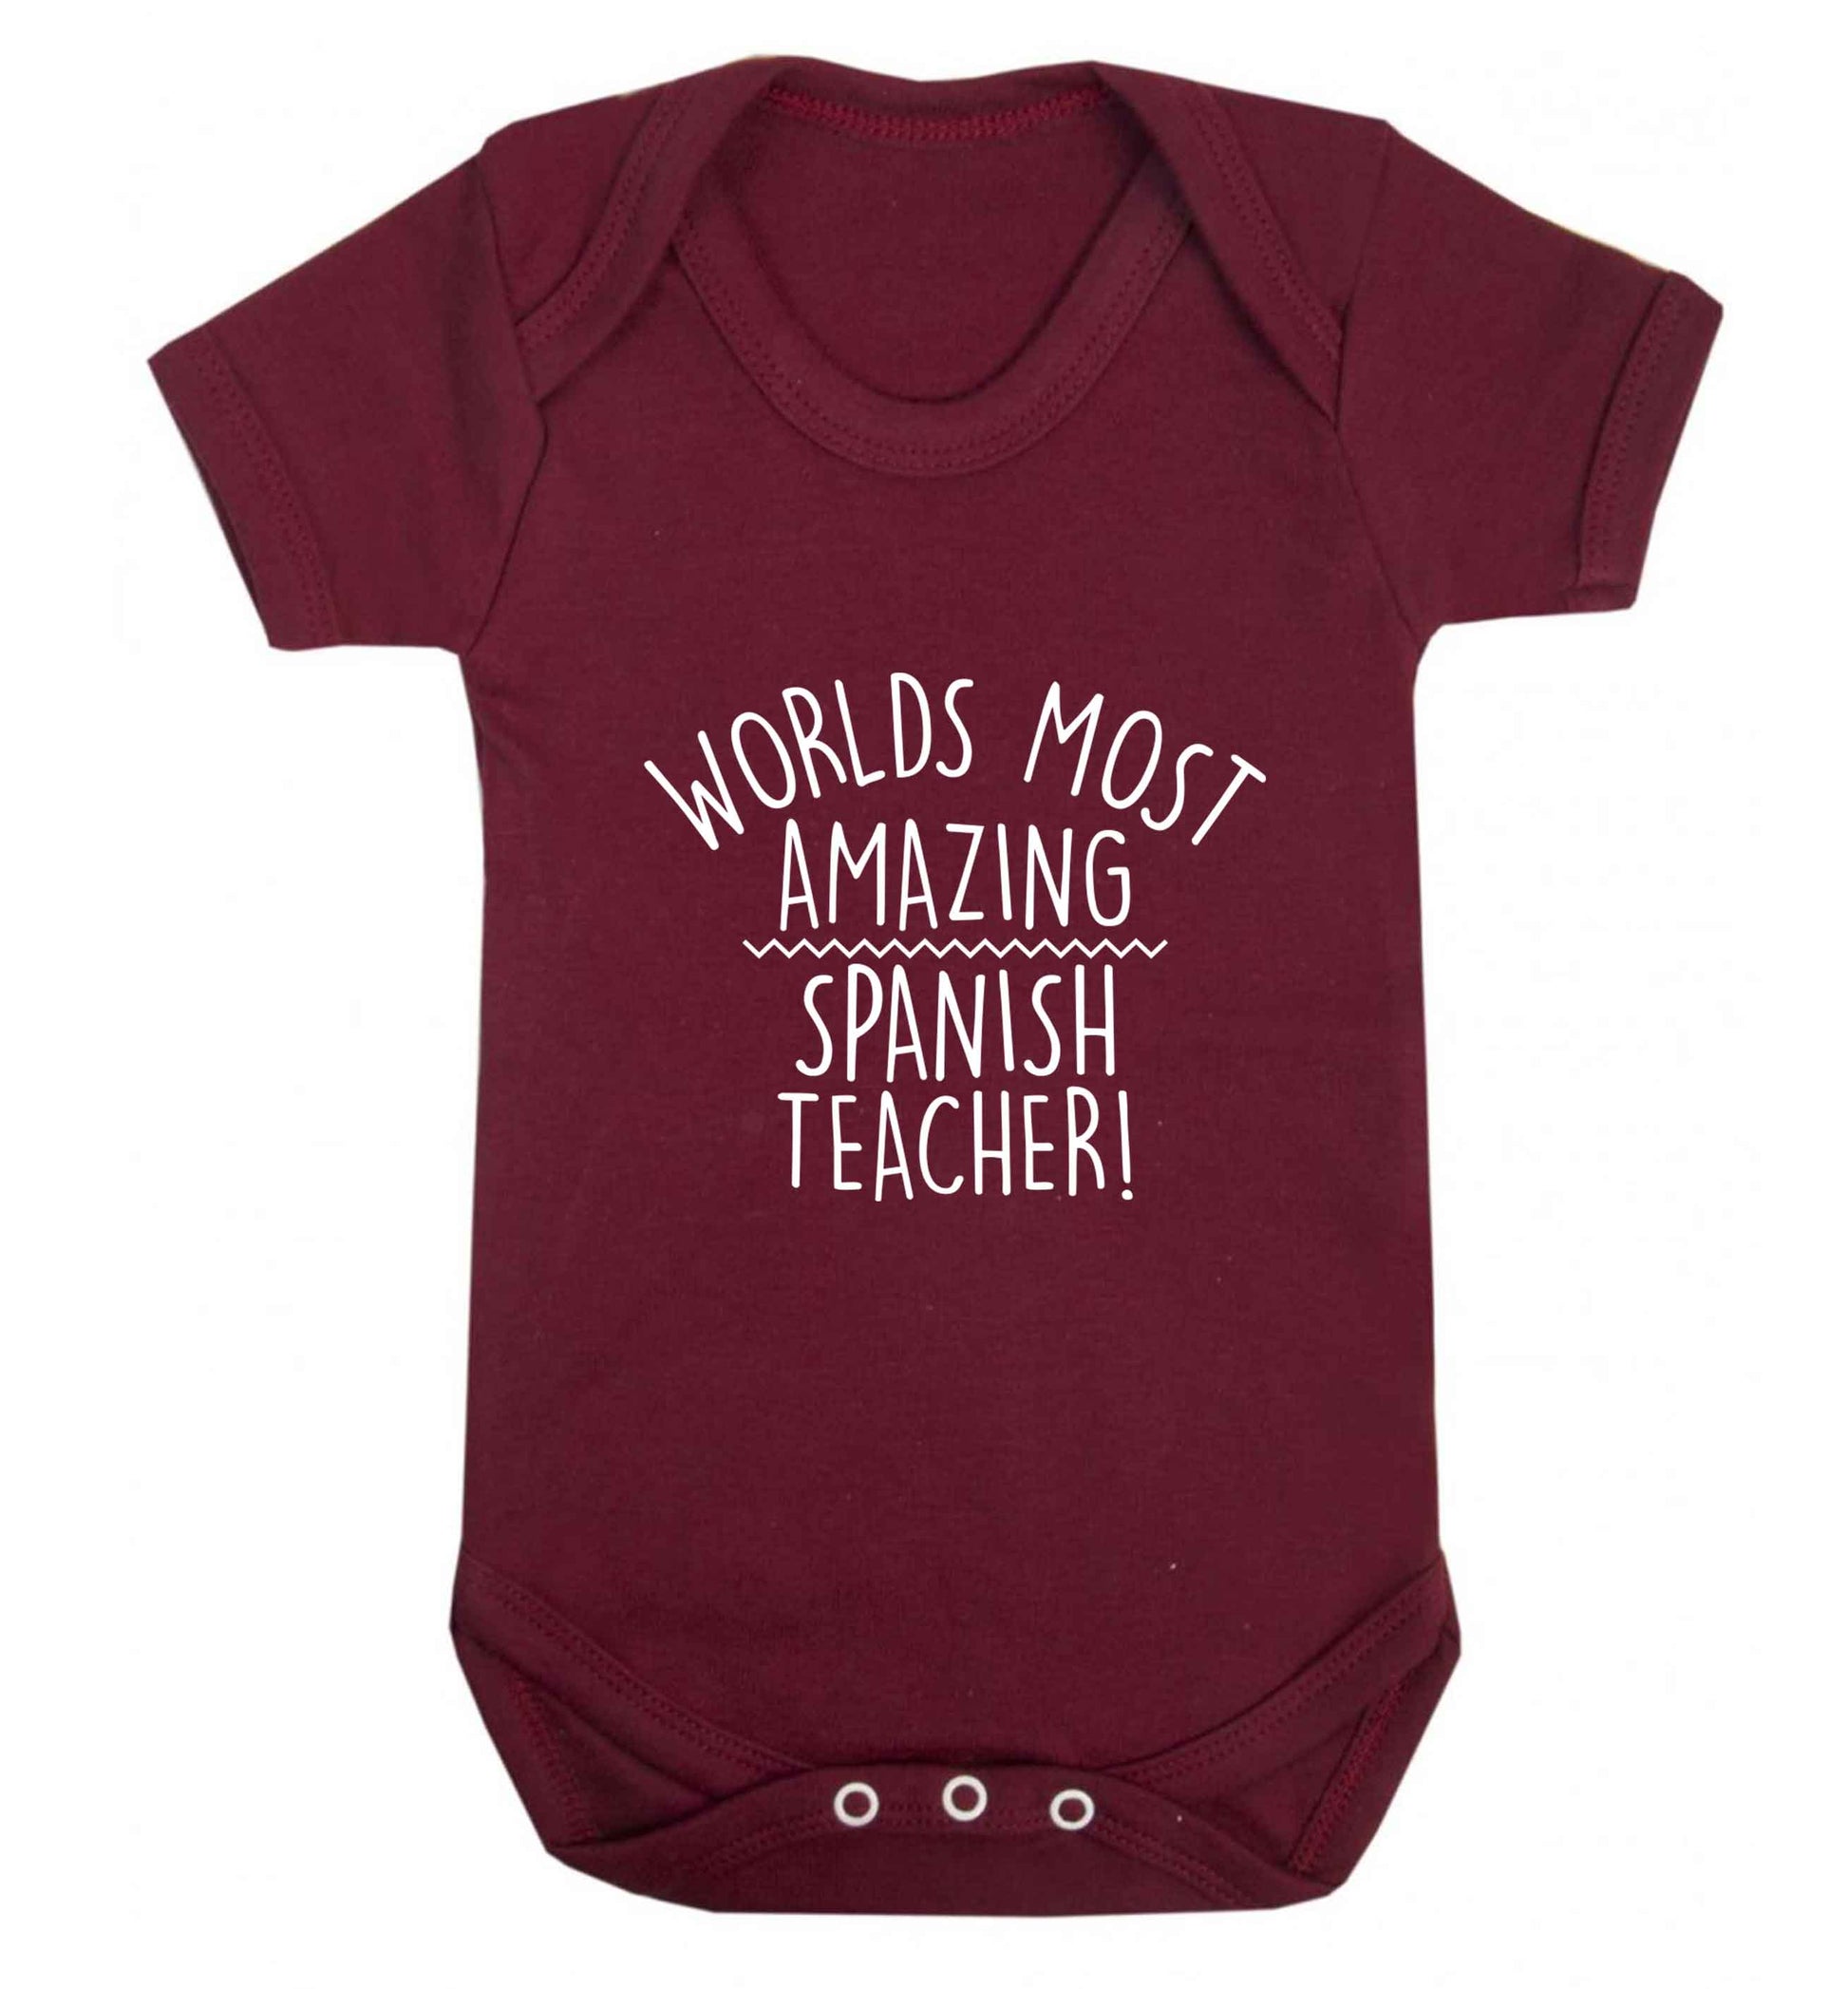 Worlds most amazing Spanish teacher baby vest maroon 18-24 months